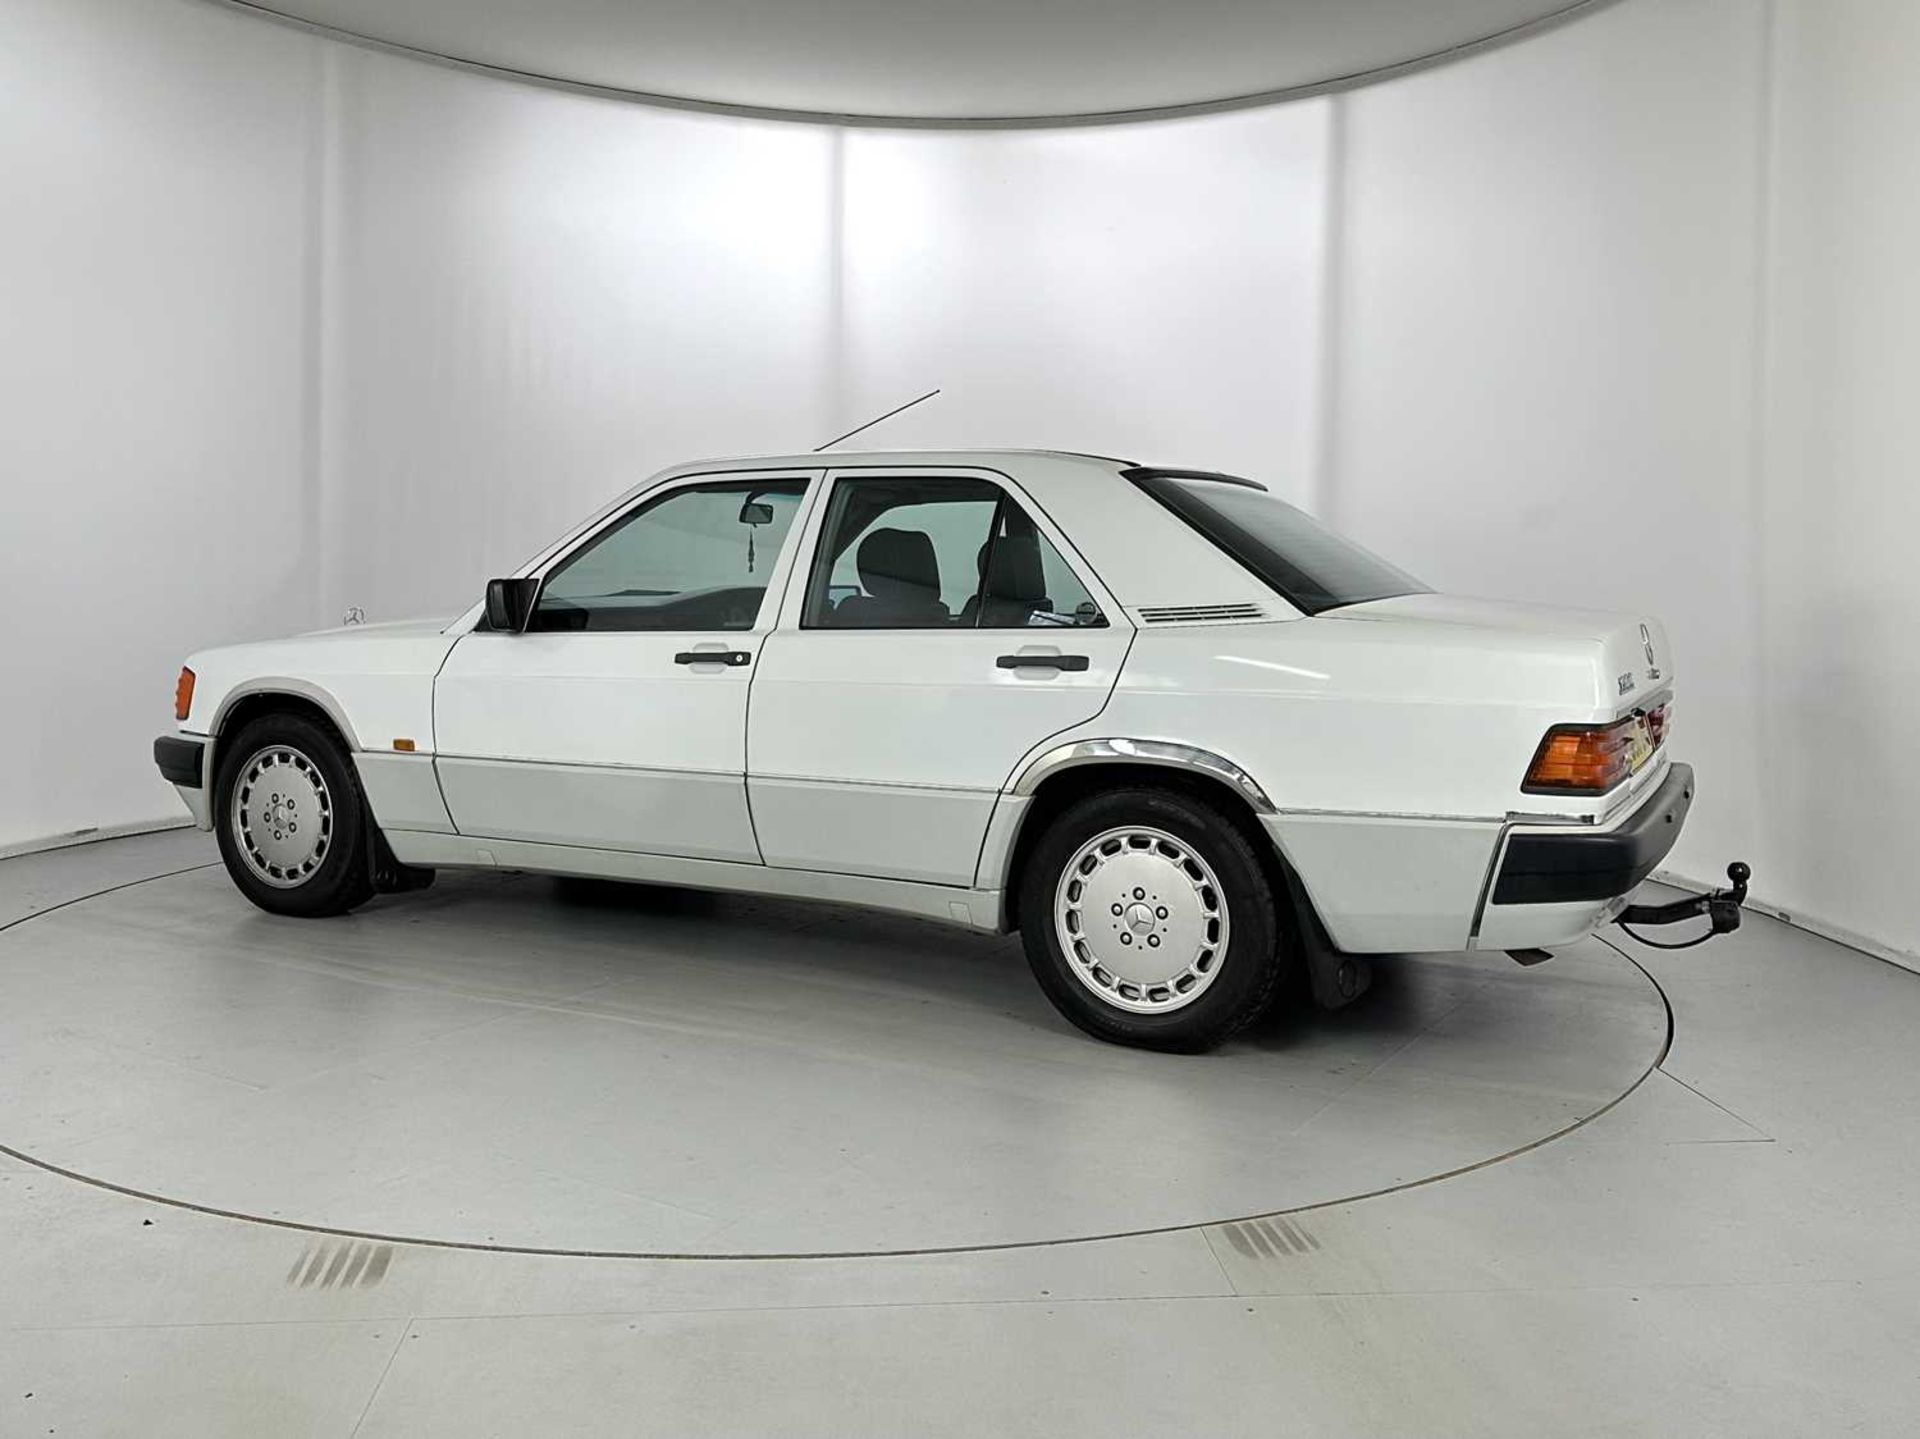 1989 Mercedes-Benz 190E - Image 6 of 34